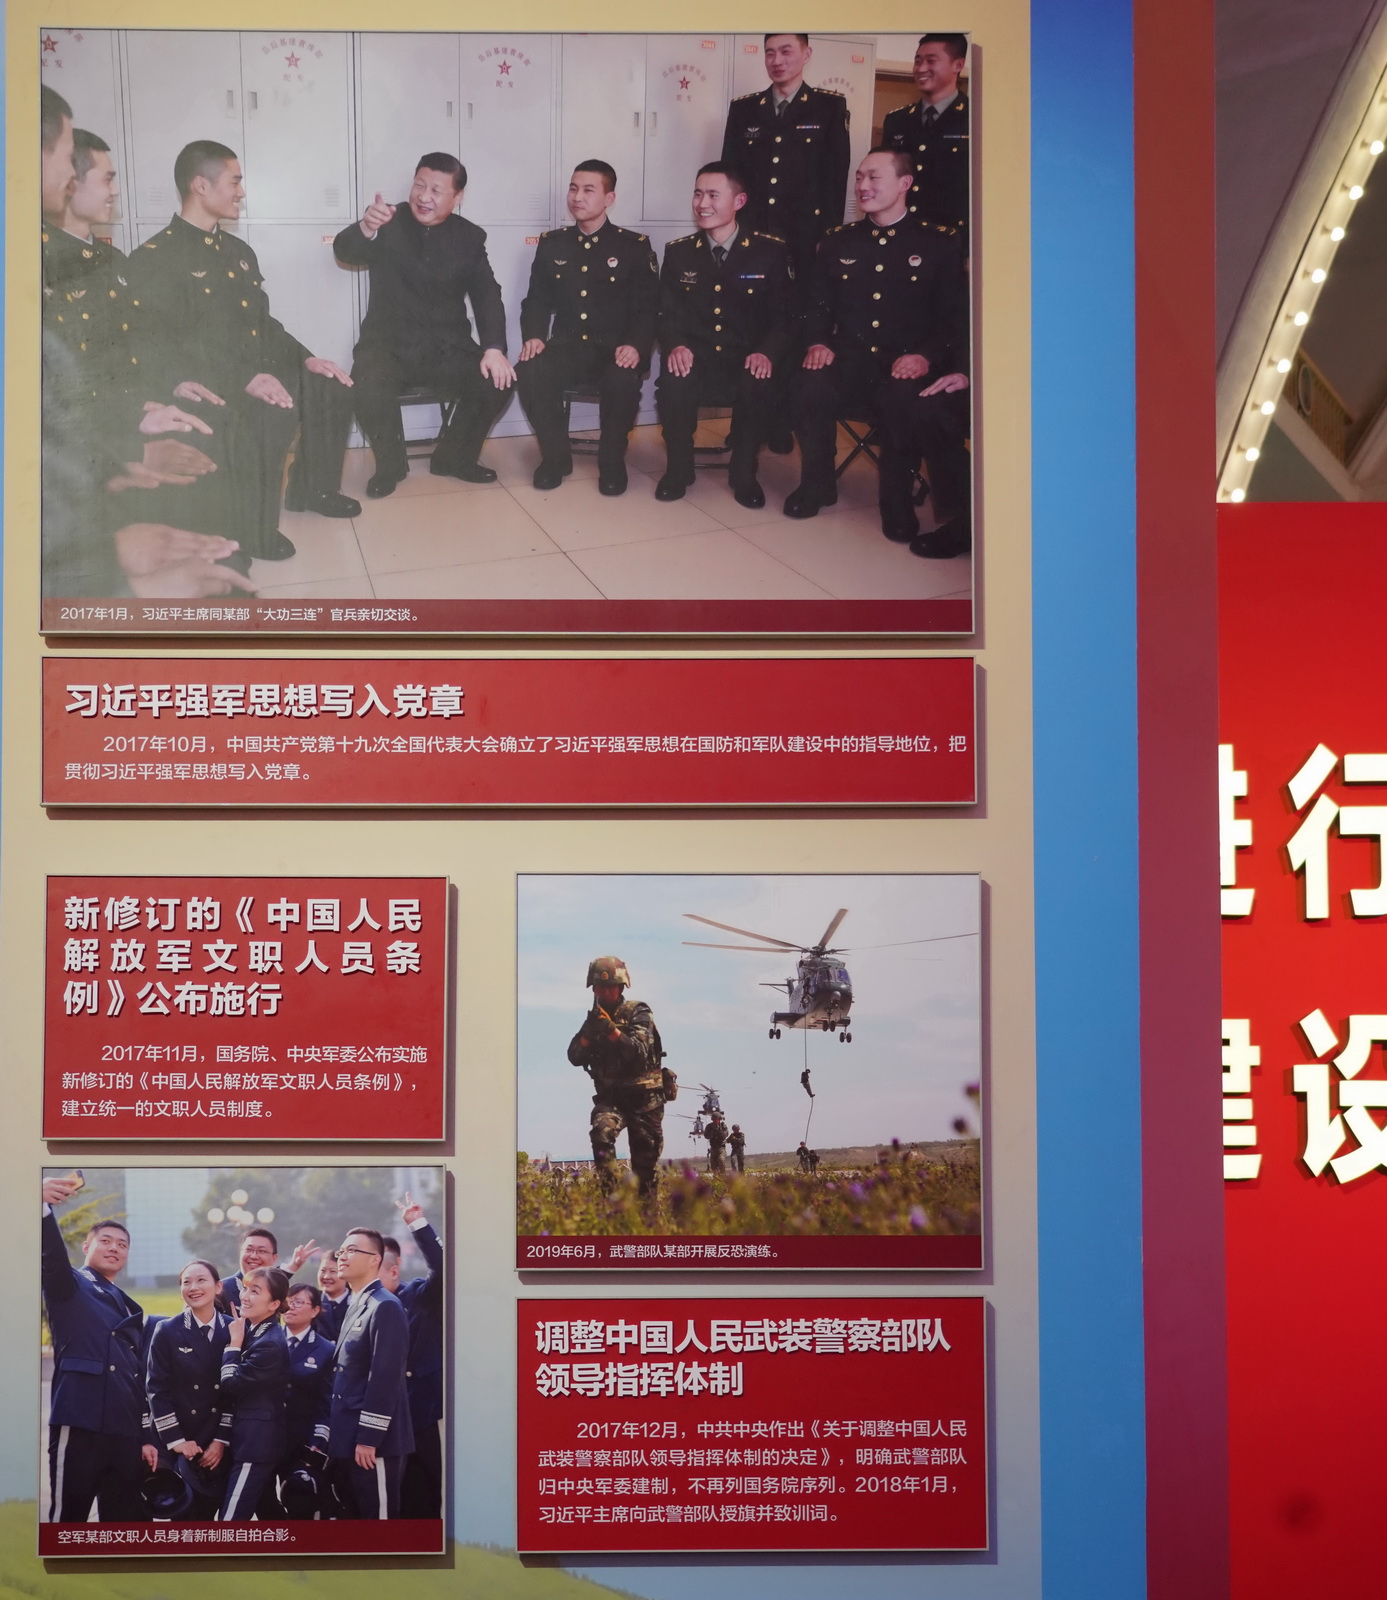 習近平強軍思想寫入黨章﹔新修訂的《中國人民解放軍文職人員條例》公布施行﹔調整中國人民武裝警察部隊領導指揮體制。